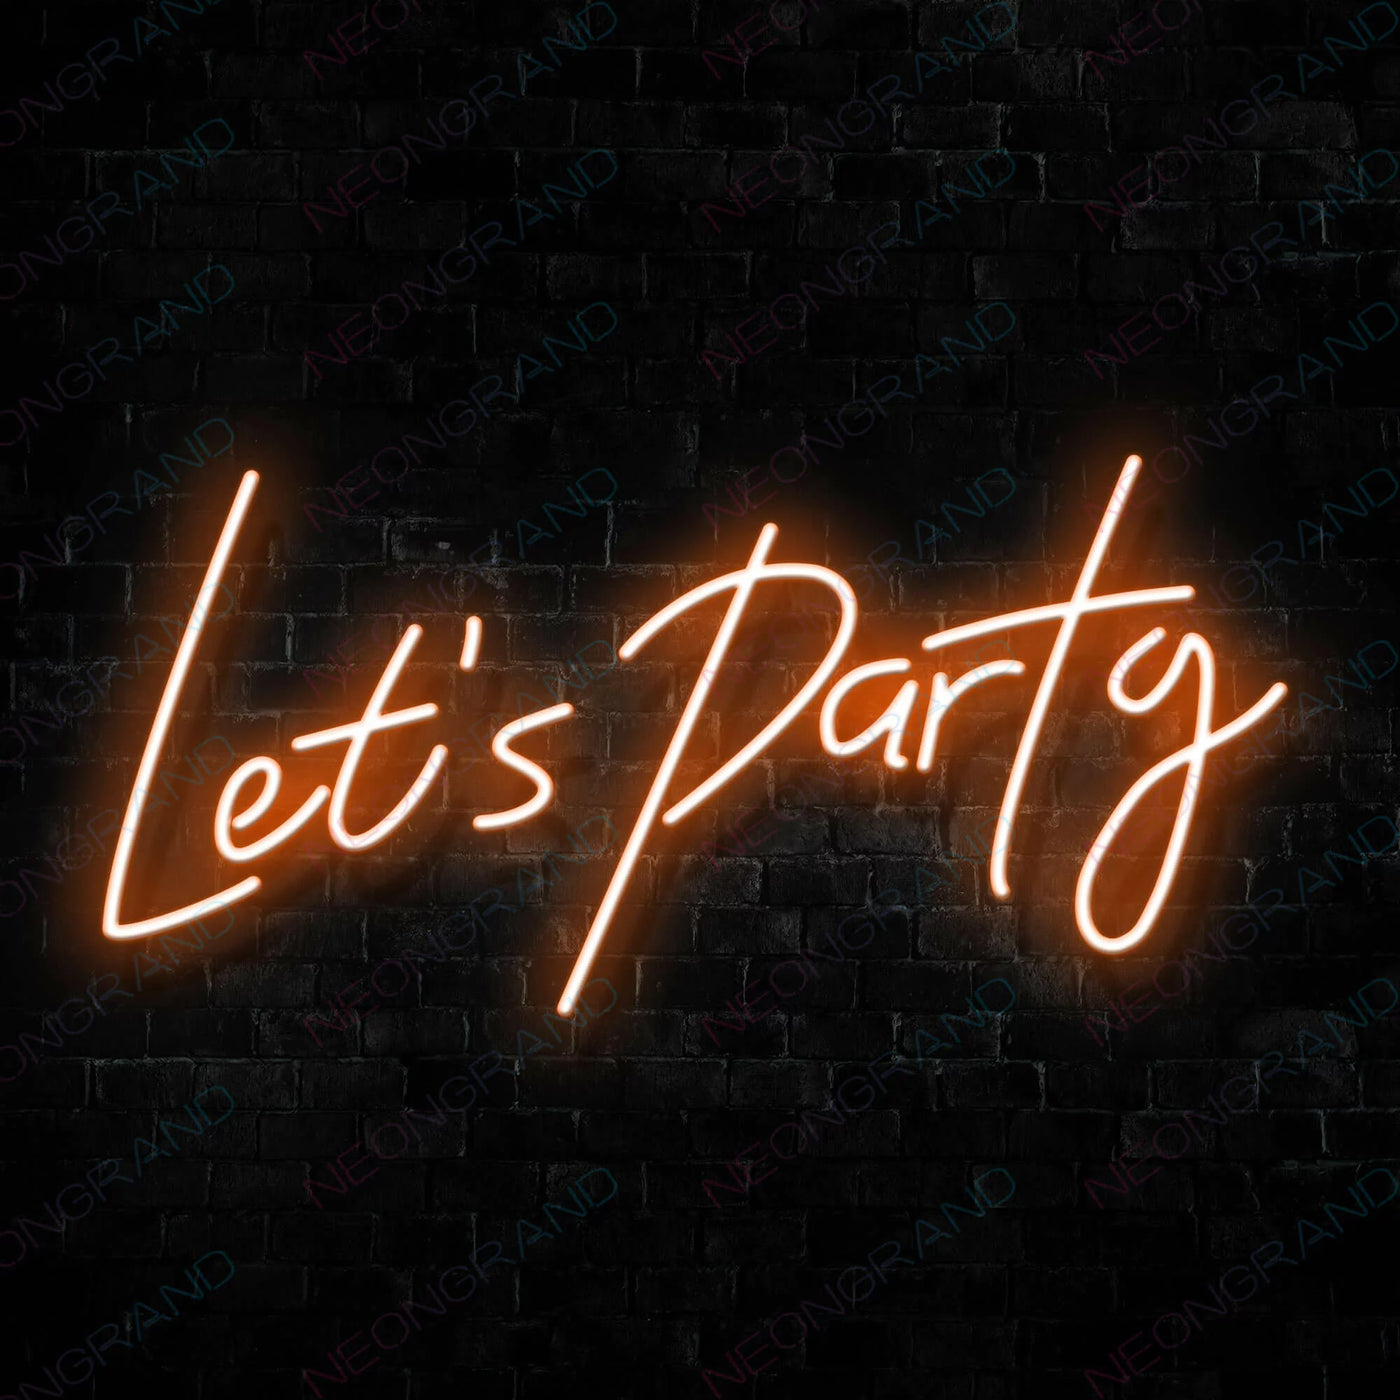 Let's Party Neon Sign Led Light DarkOrange